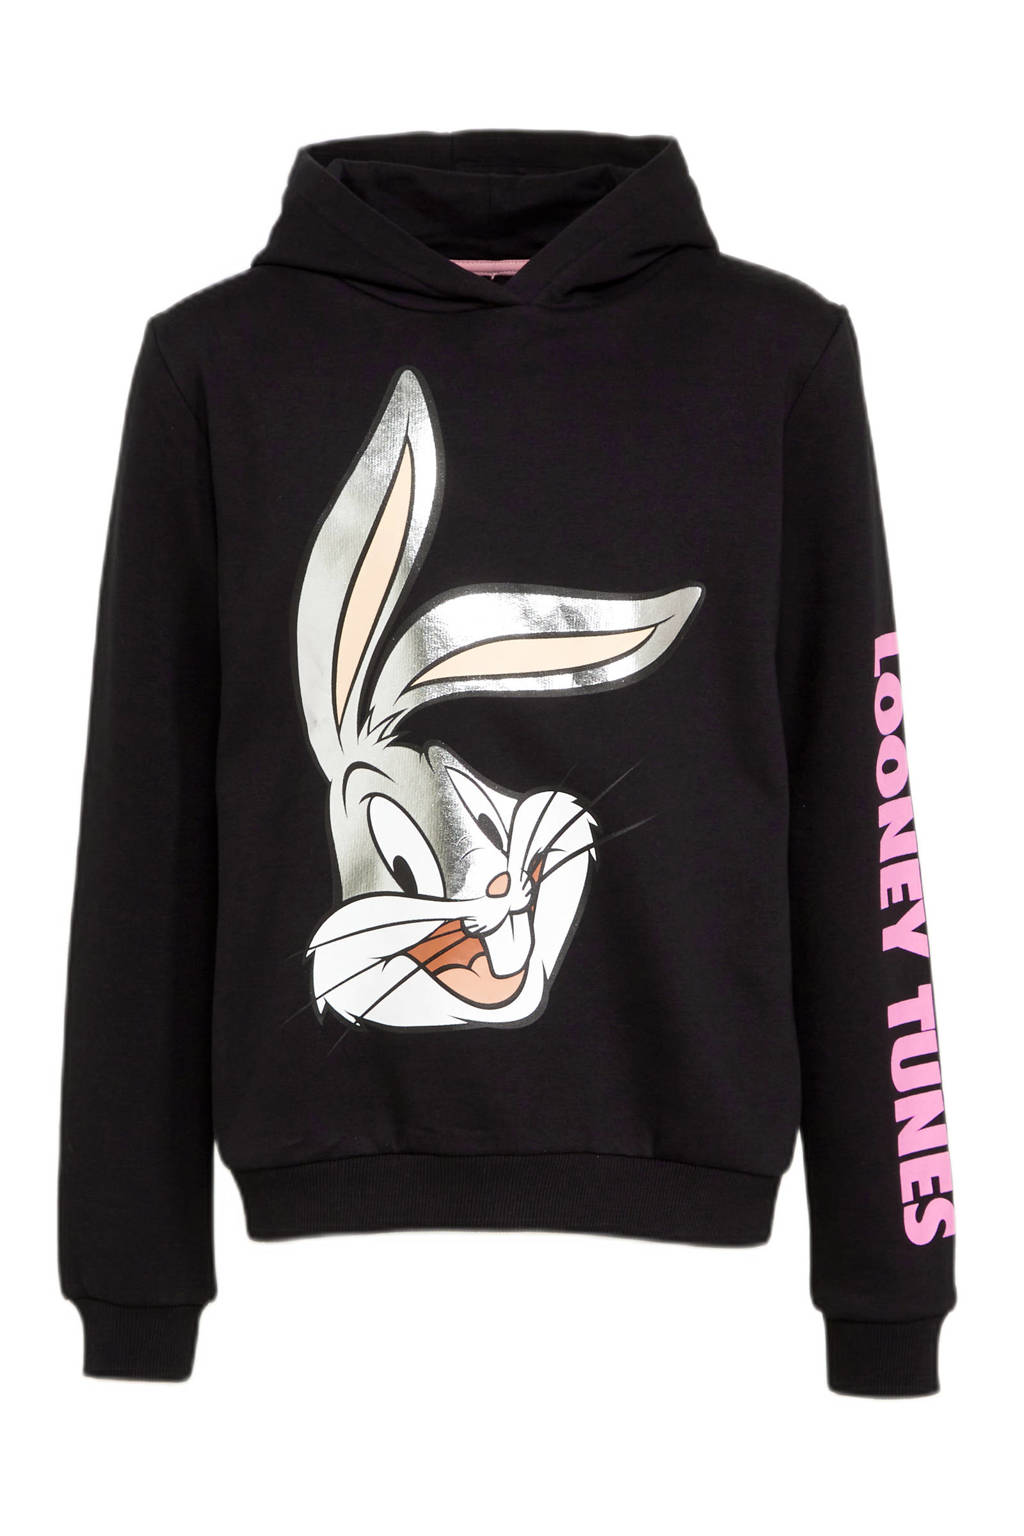 Zwart en roze meisjes C&A Bugs Bunny hoodie van sweat materiaal met printopdruk, lange mouwen, capuchon en geribde boorden